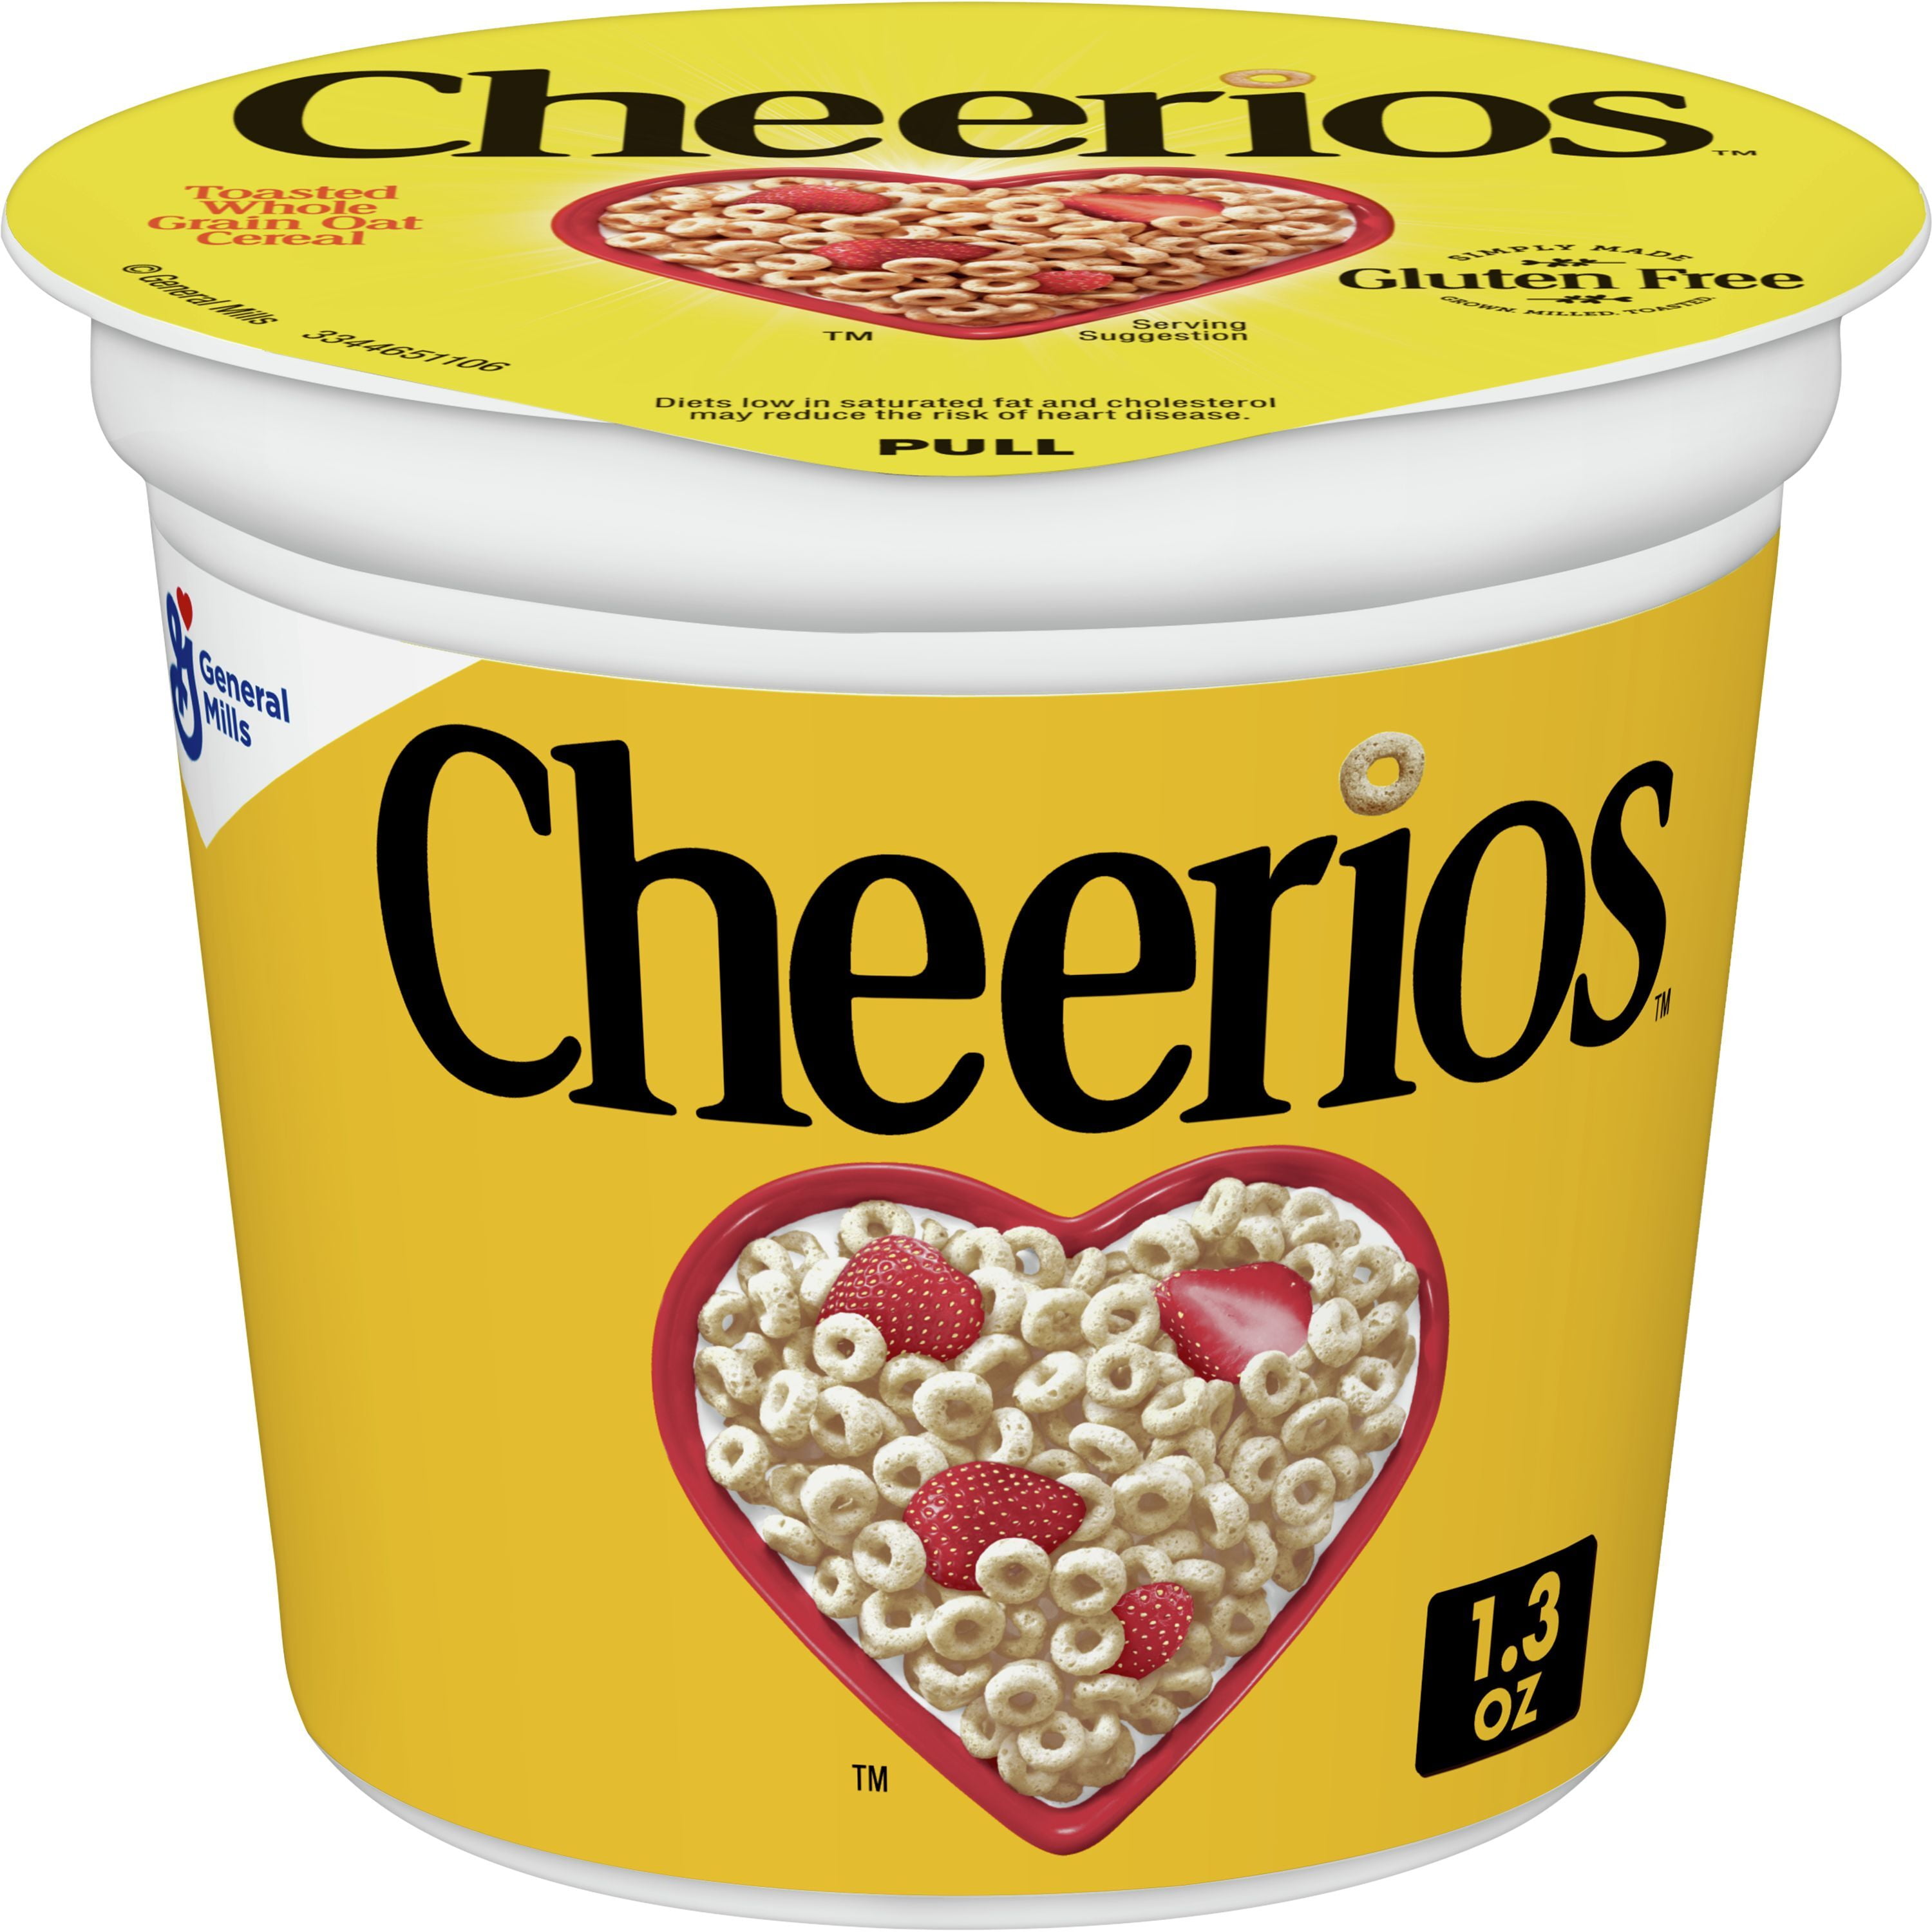 original-cheerios-heart-healthy-cereal-cup-1-3-oz-single-serve-cereal